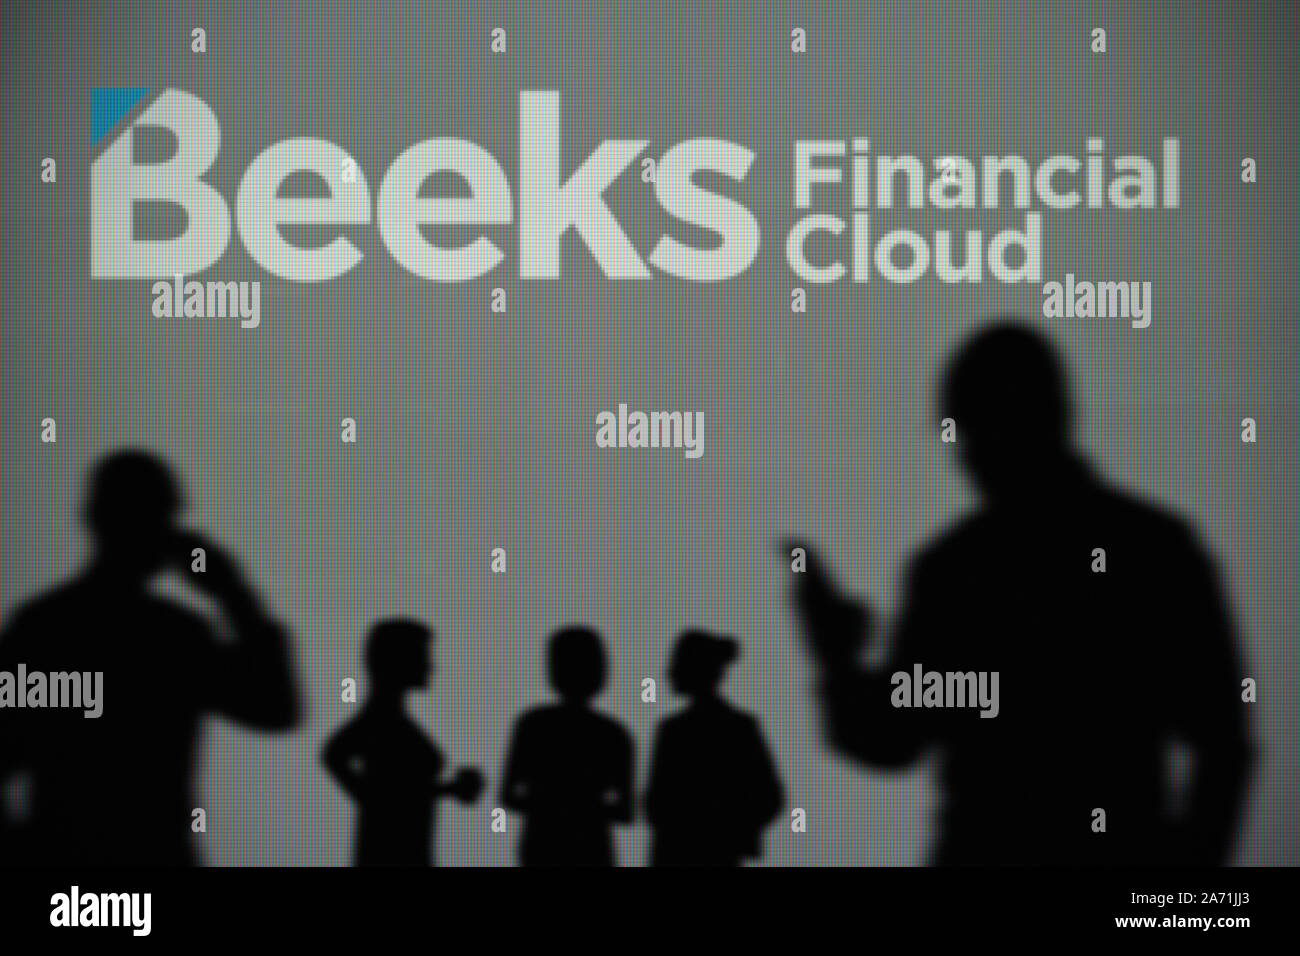 Die Beeks finanzielle Cloud Logo ist auf einen LED-Bildschirm im Hintergrund, während eine Silhouette Person ein Smartphone verwendet (nur redaktionelle Nutzung) Stockfoto